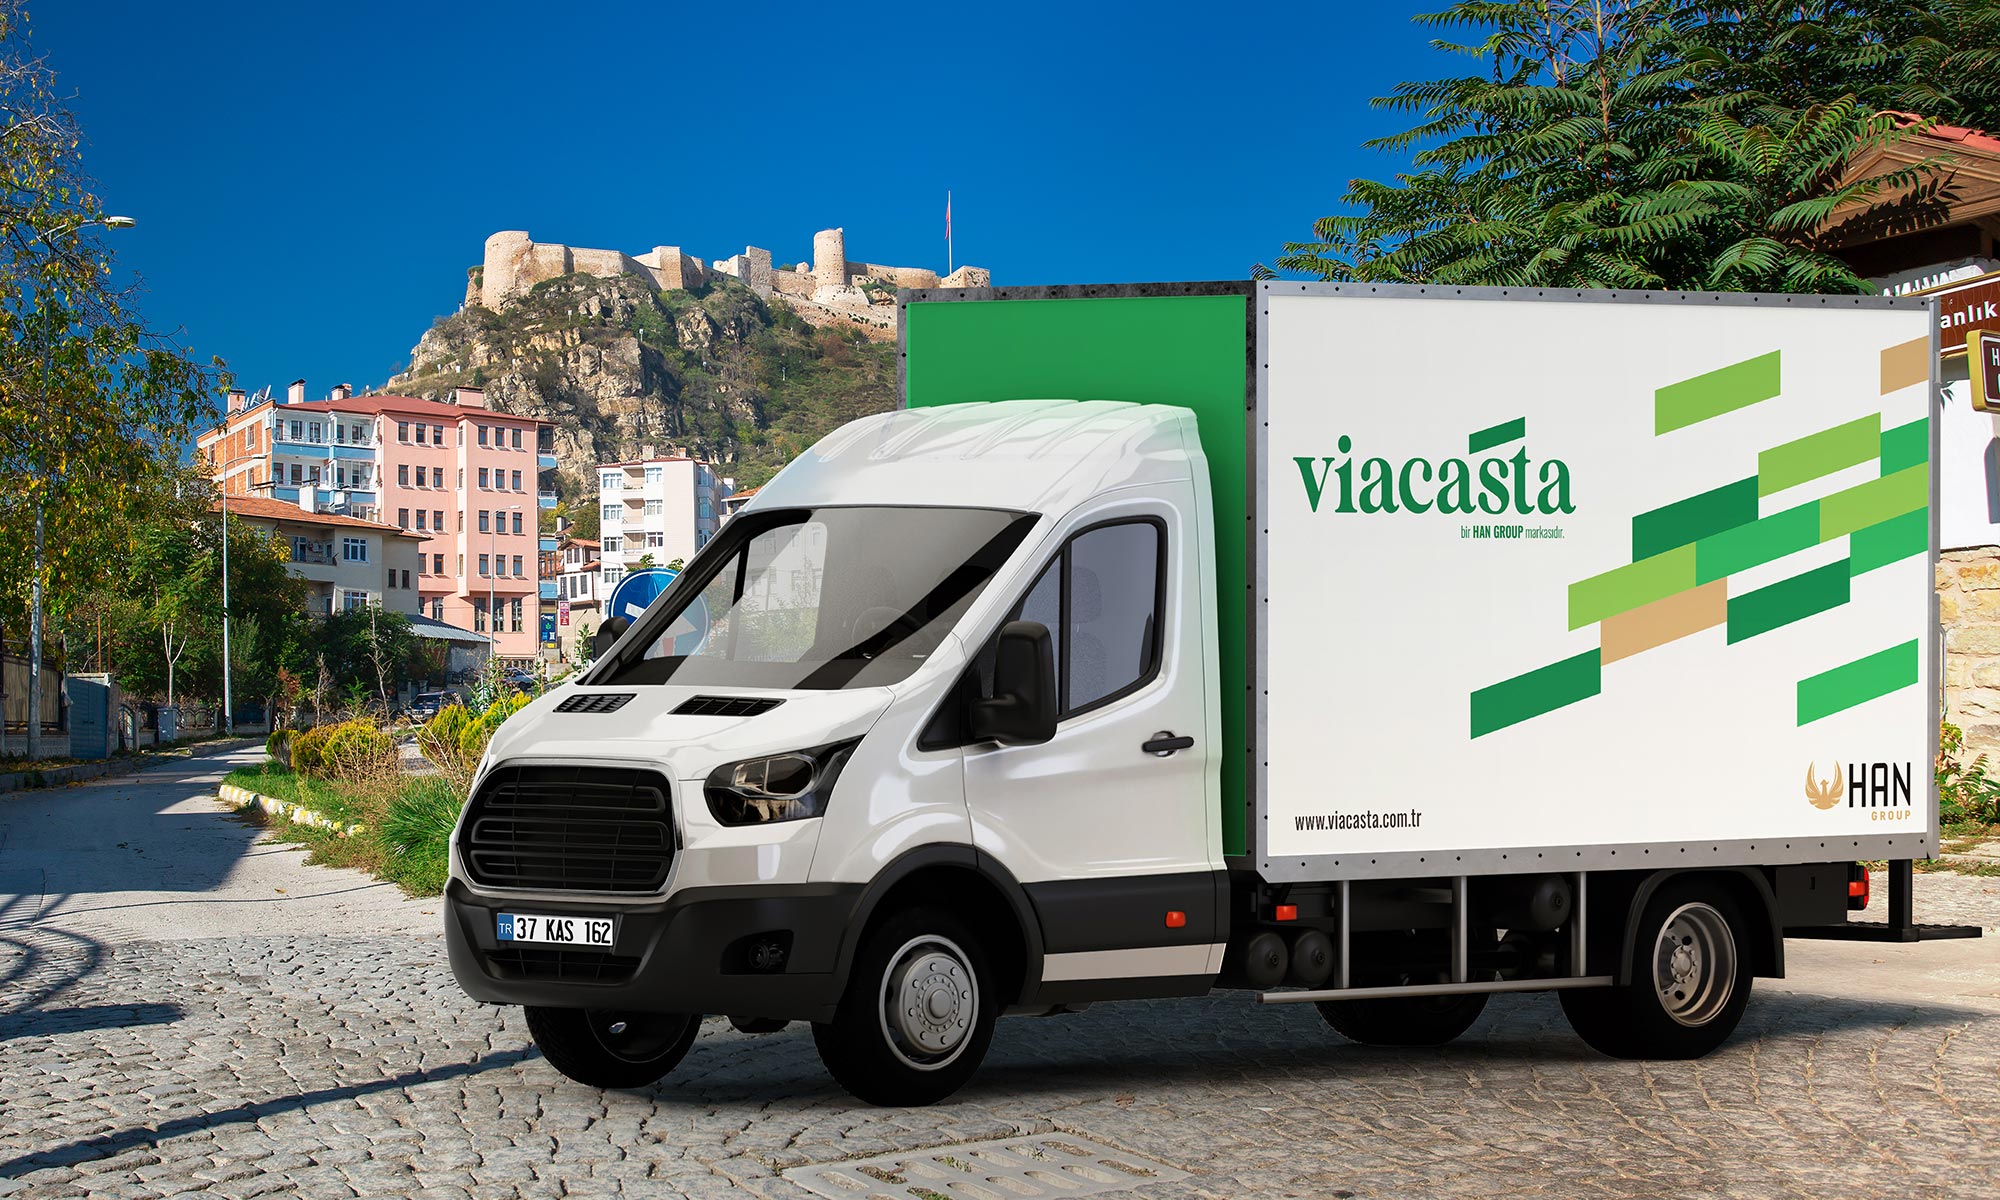 Viacasta Vehicle Wrap - KONSEPTIZ Advertising Agency in Turkey